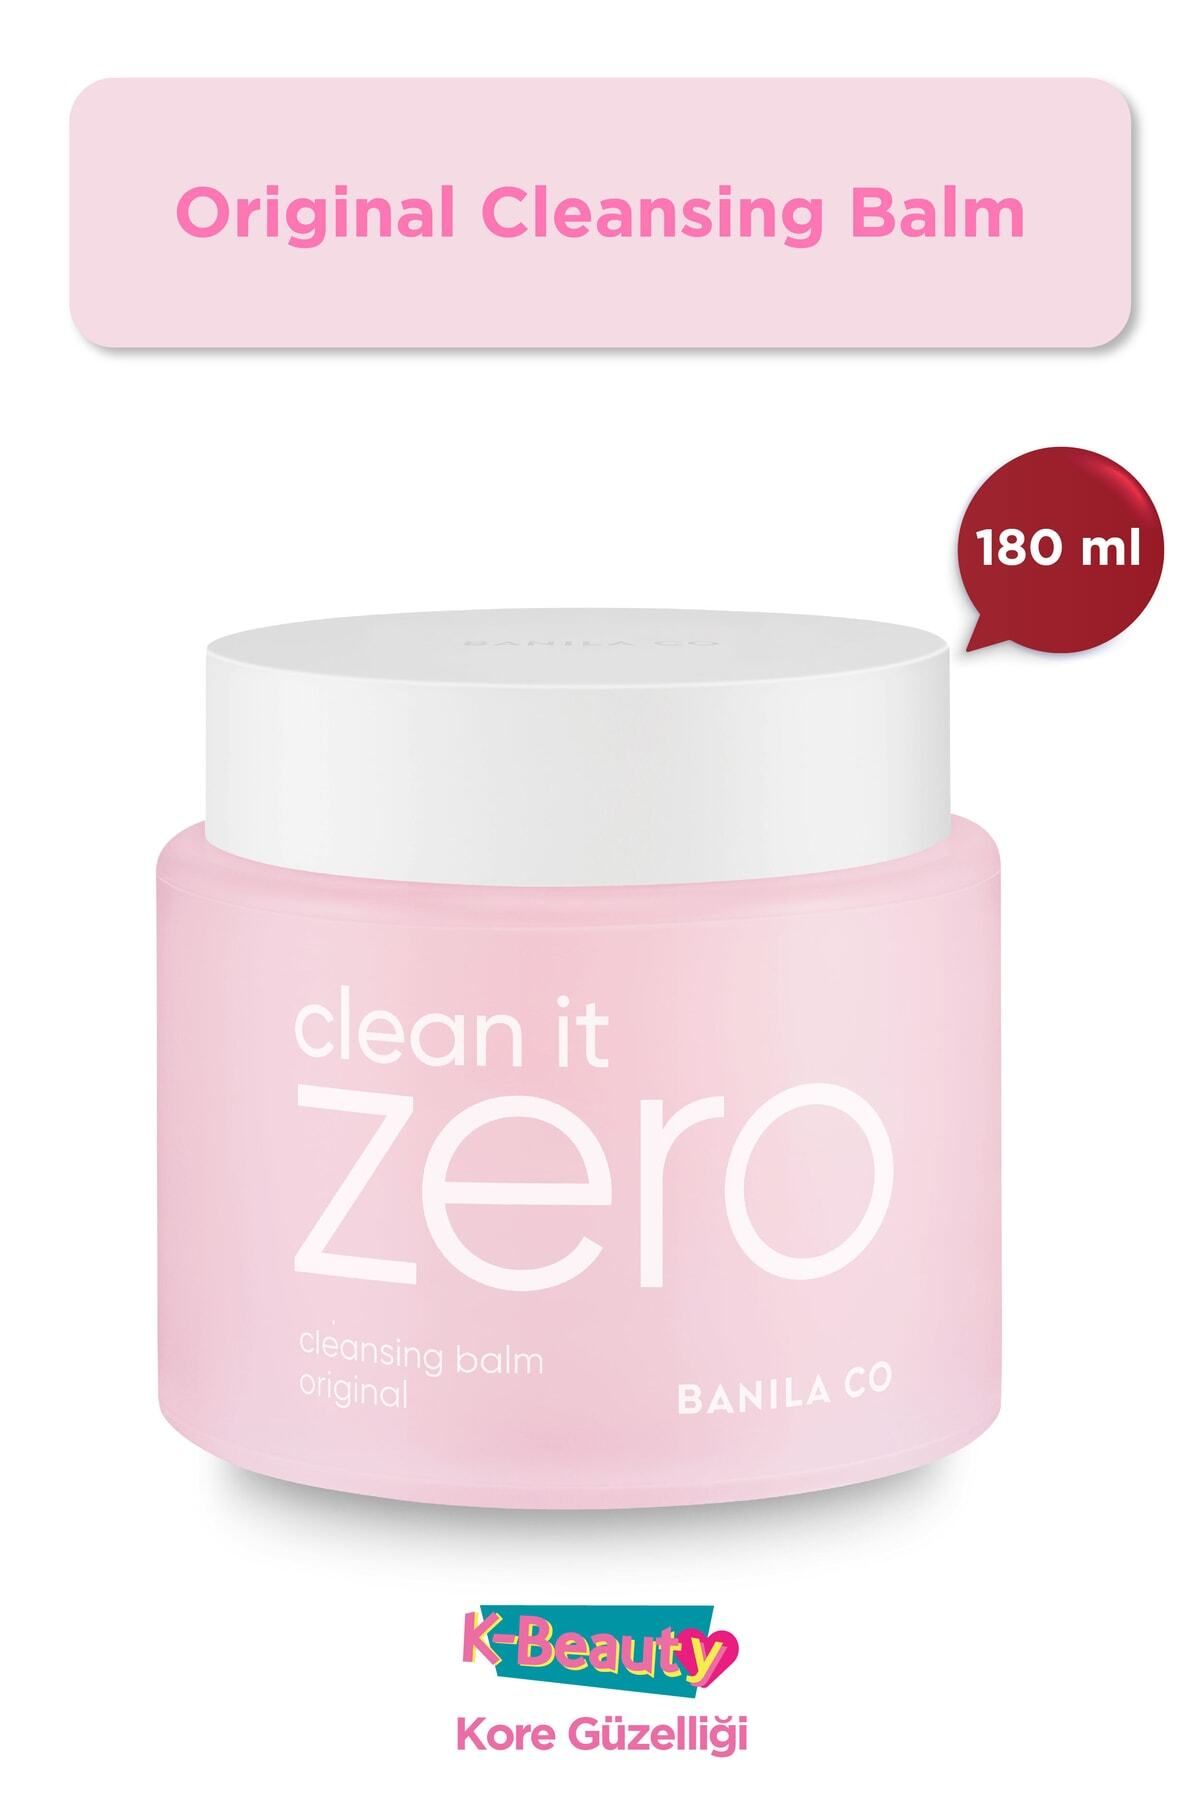 Banila Co Banila.co Clean It Zero Original Cleansing Balm Yağ Bazlı Temizleyici 180 ml